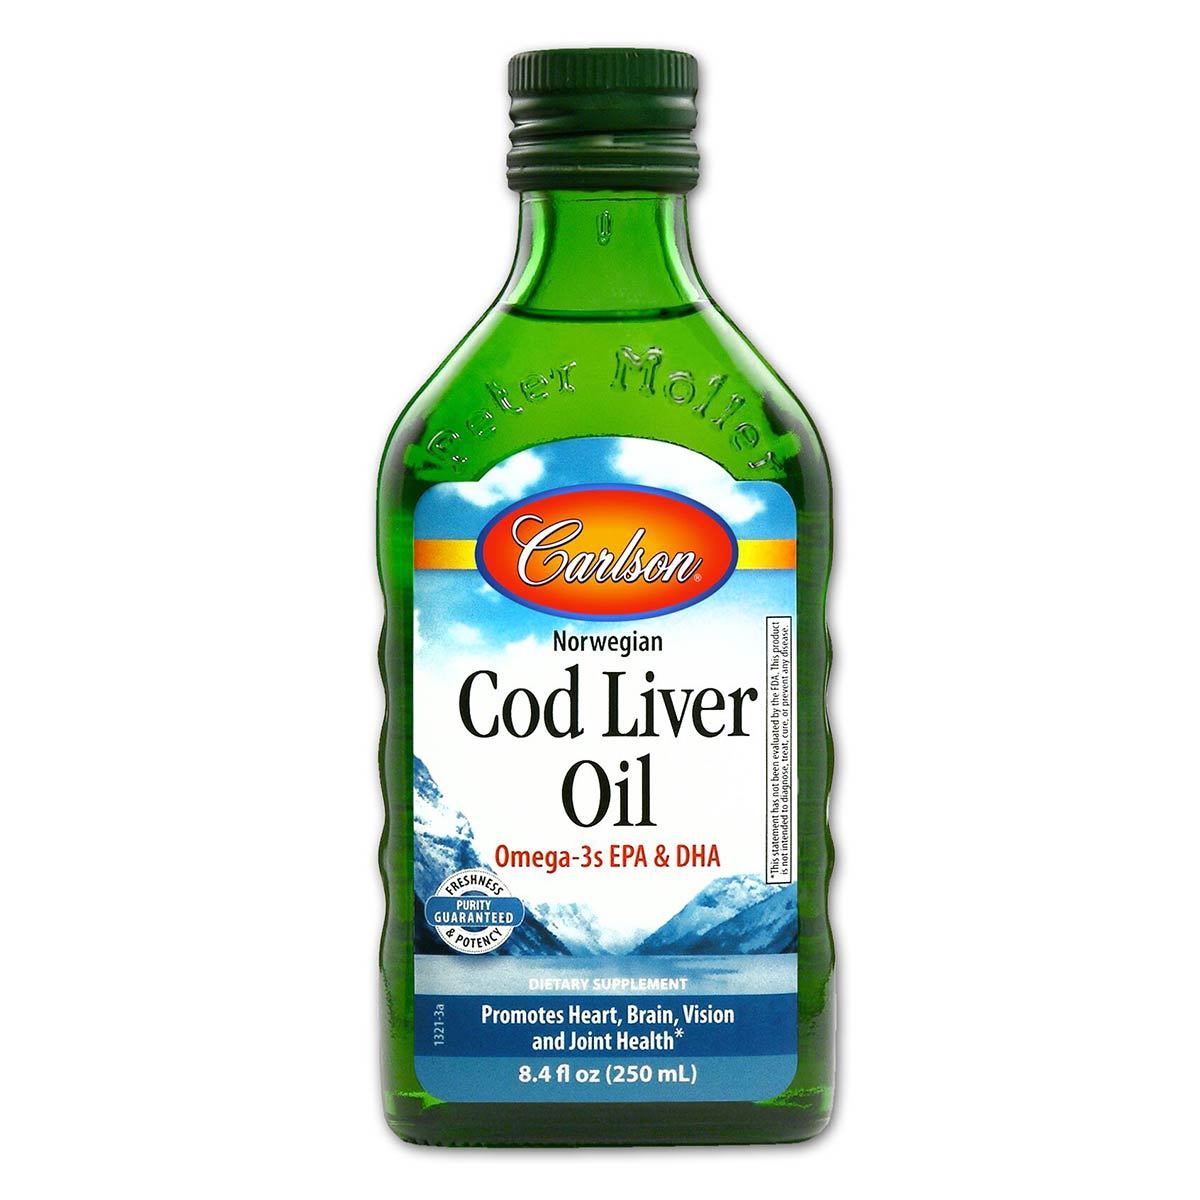 Primary image of Cod Liver Oil Liquid